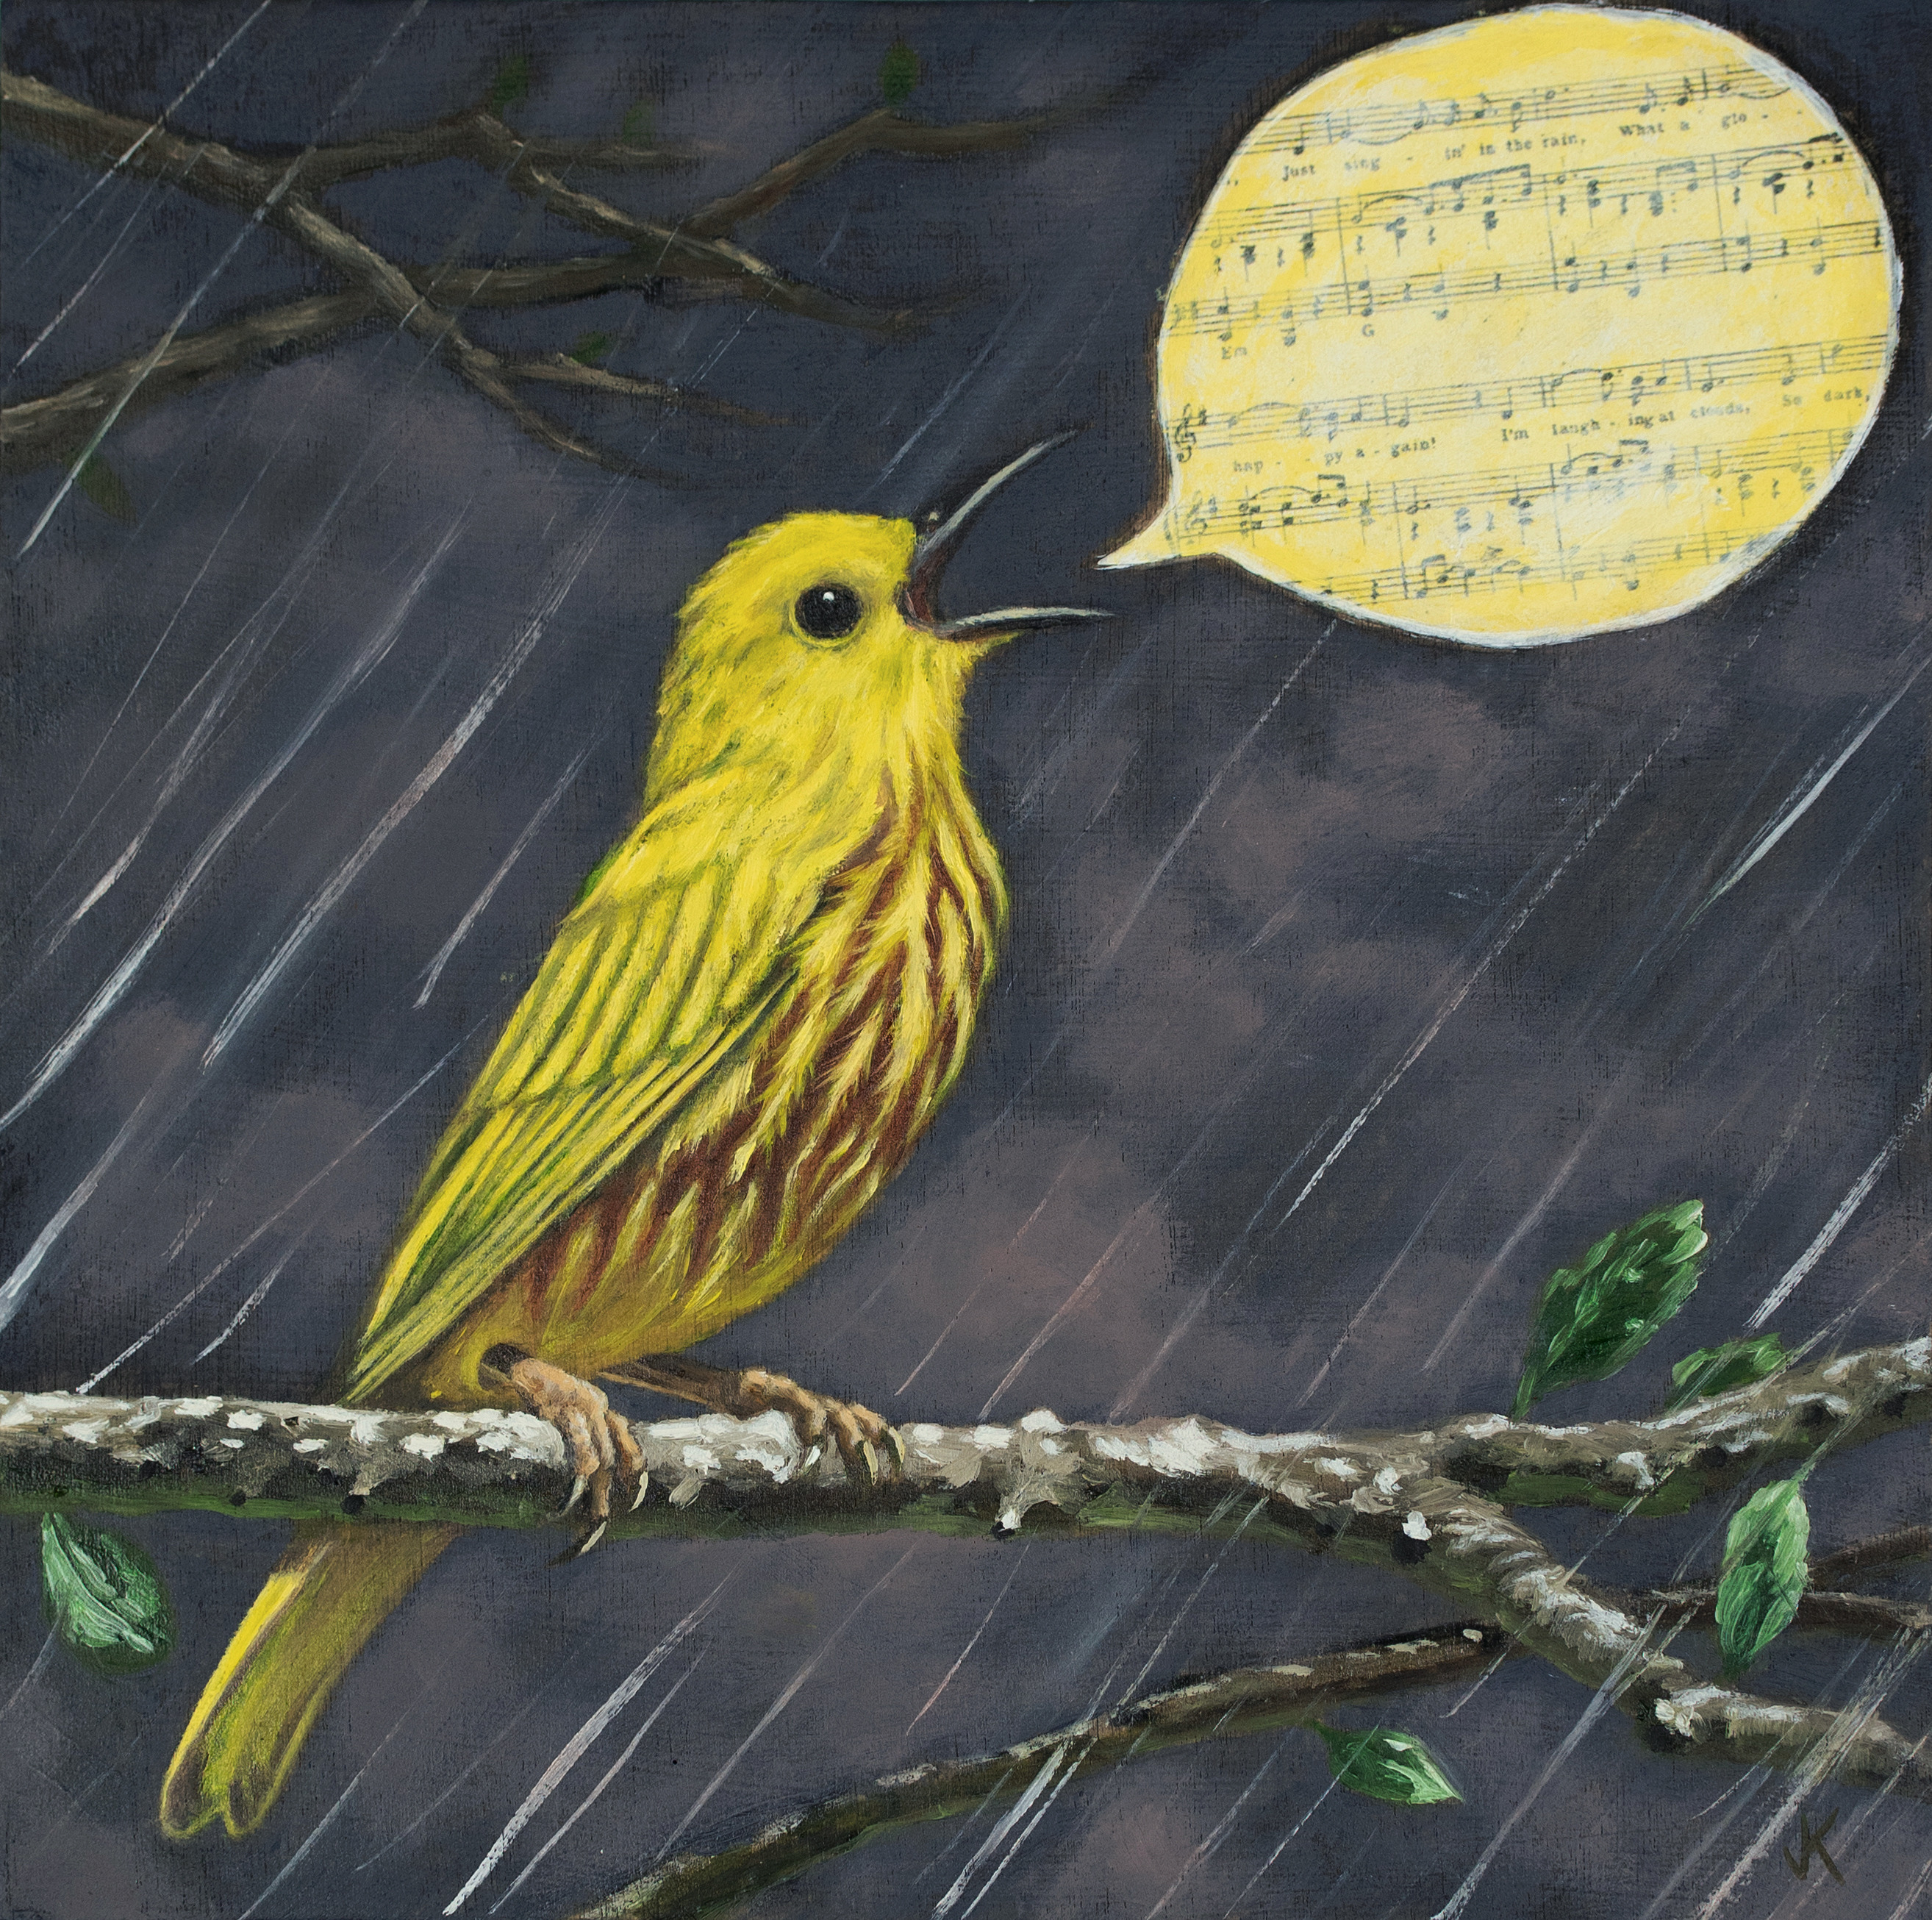 Singing in the rain zuwdlh